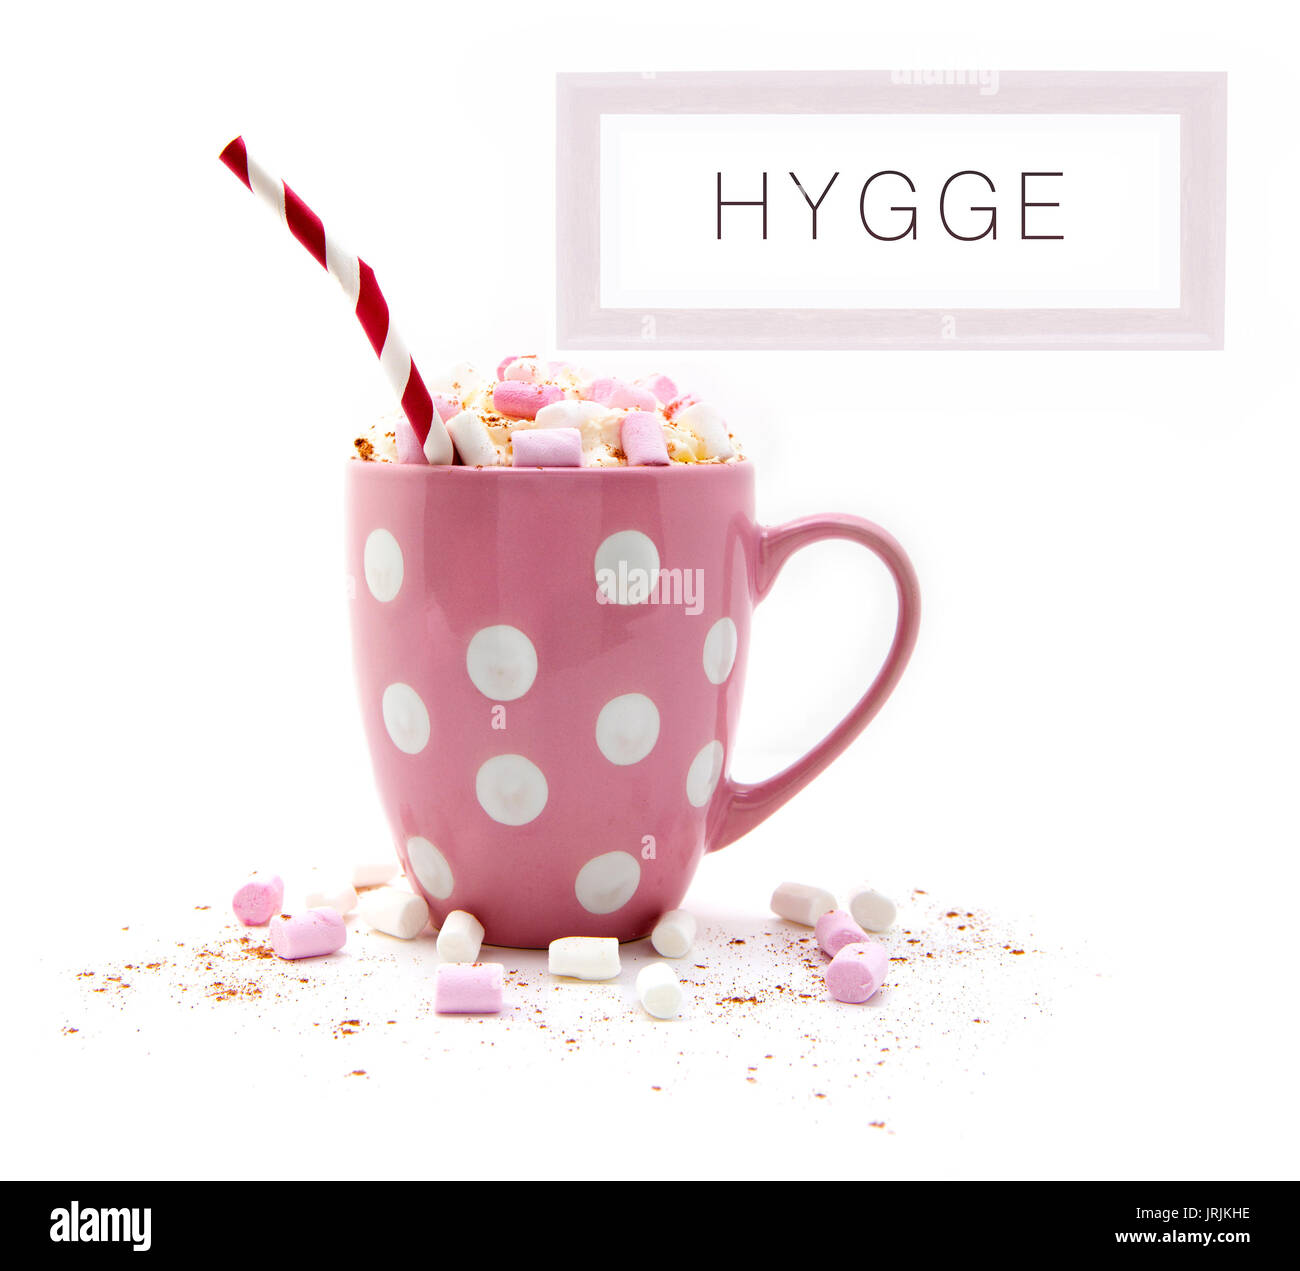 Heiße Schokolade in eine rosa Tasse mit Marshmallows ein rot weiß Stroh und ein Bild von hygge auf weißem Hintergrund gestreift Stockfoto